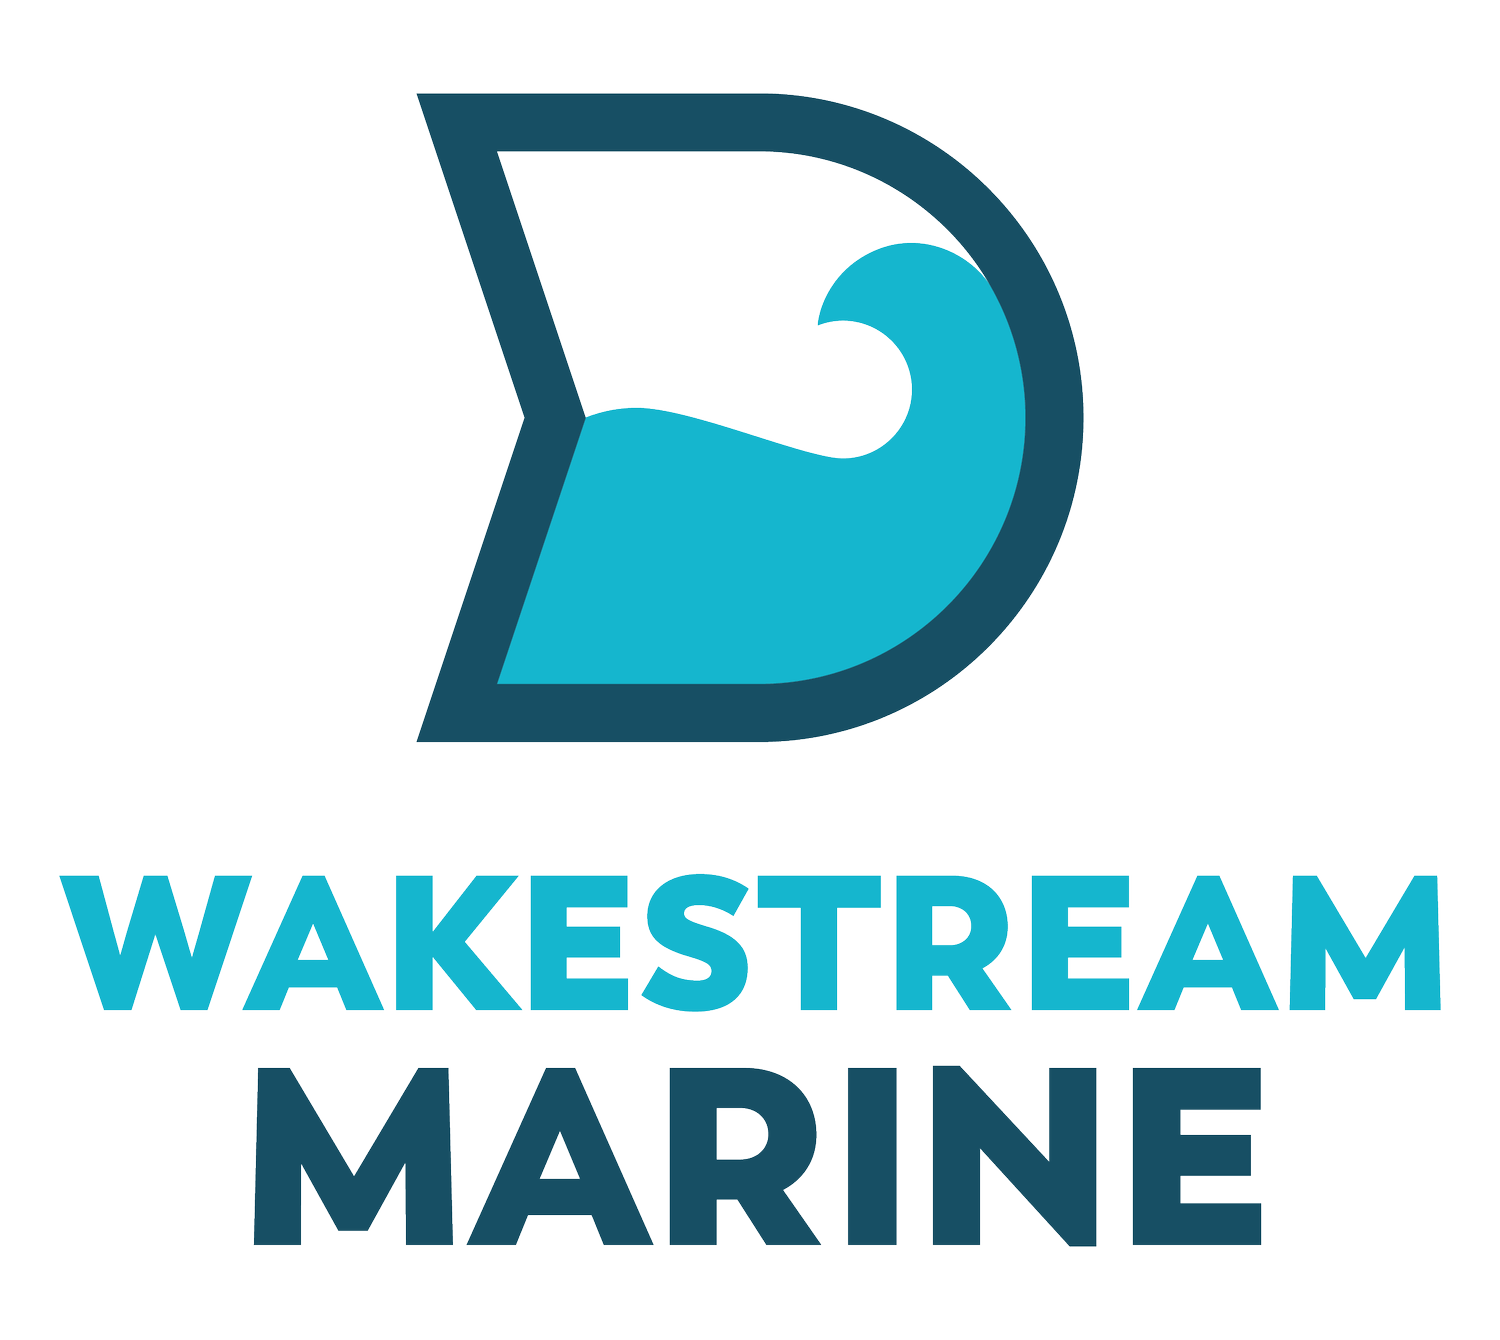 Wakestream Marine